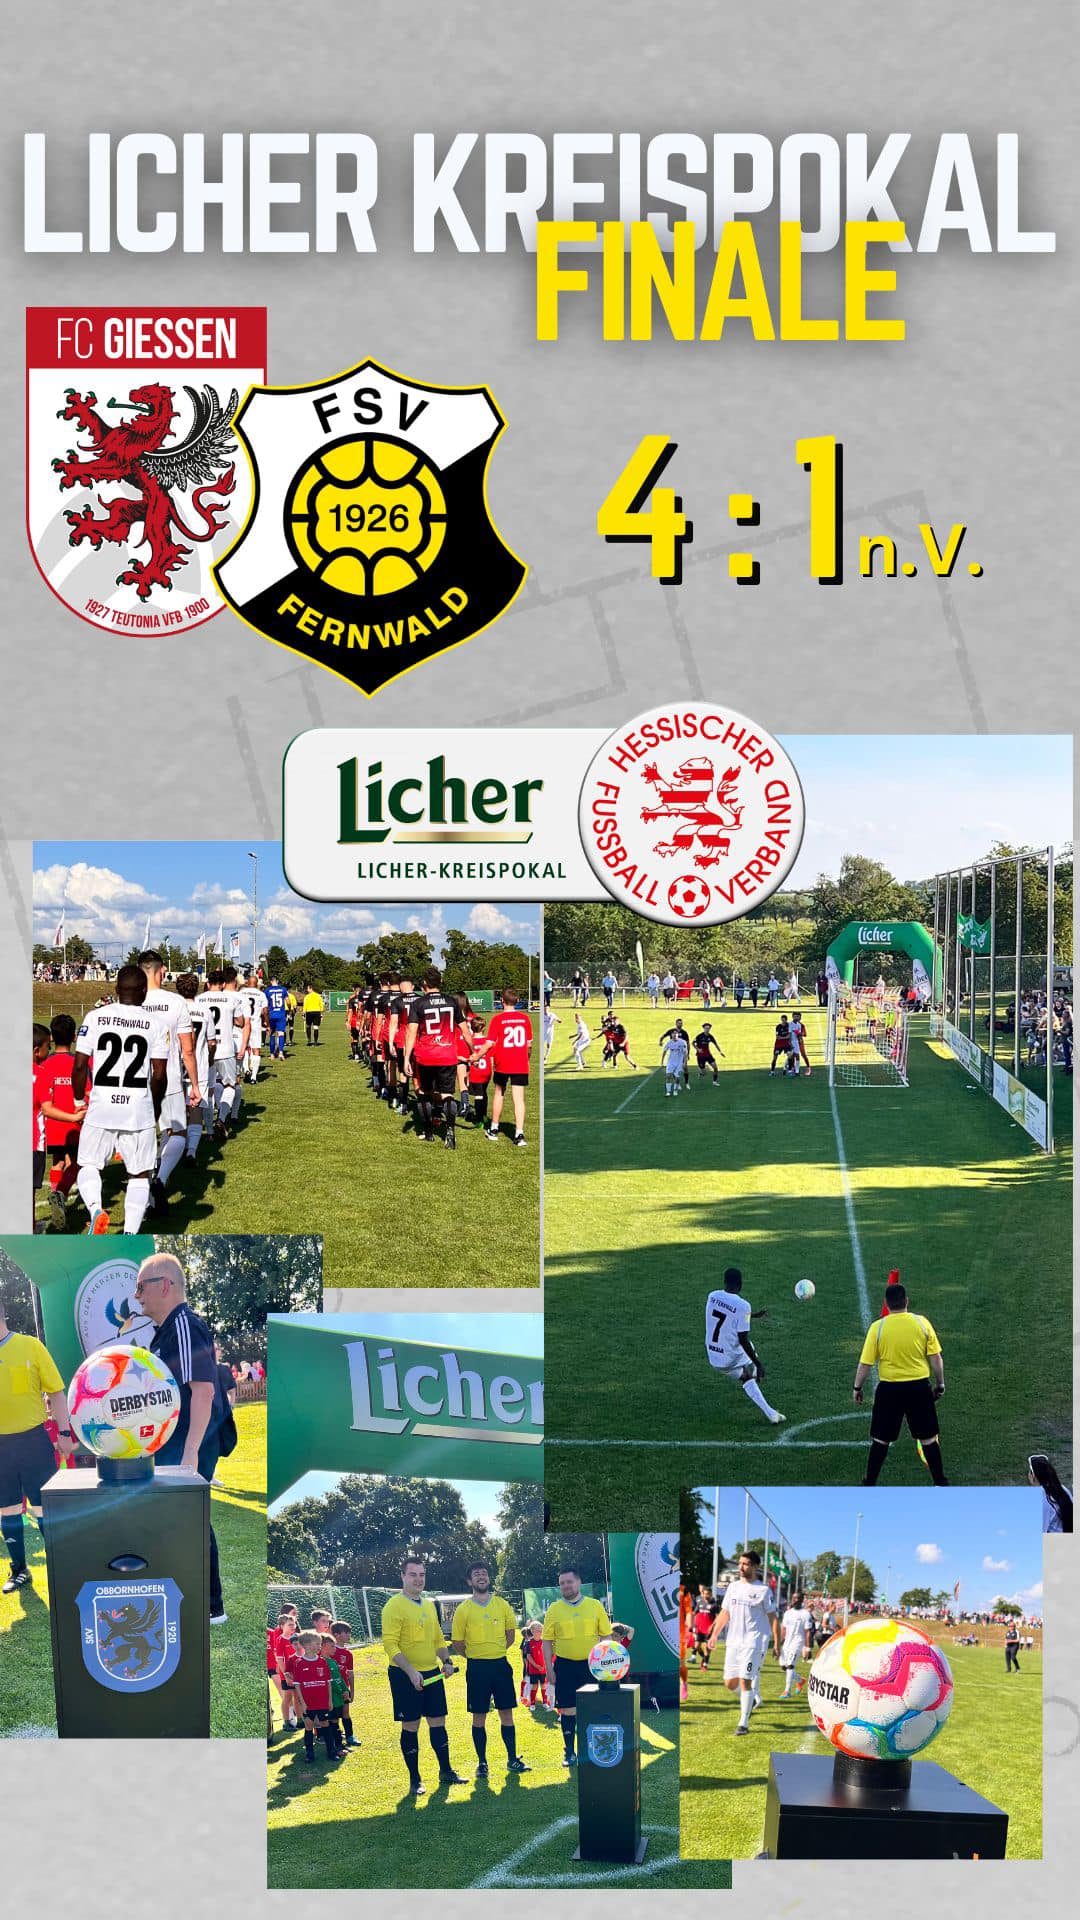 Glückwunsch an den FC Gießen zum Pokalsieg und ein großes Lob an die SG Obbornhofen/Bellersheim für die Organisation und Ausführung des Licher Kreispokal Finale.